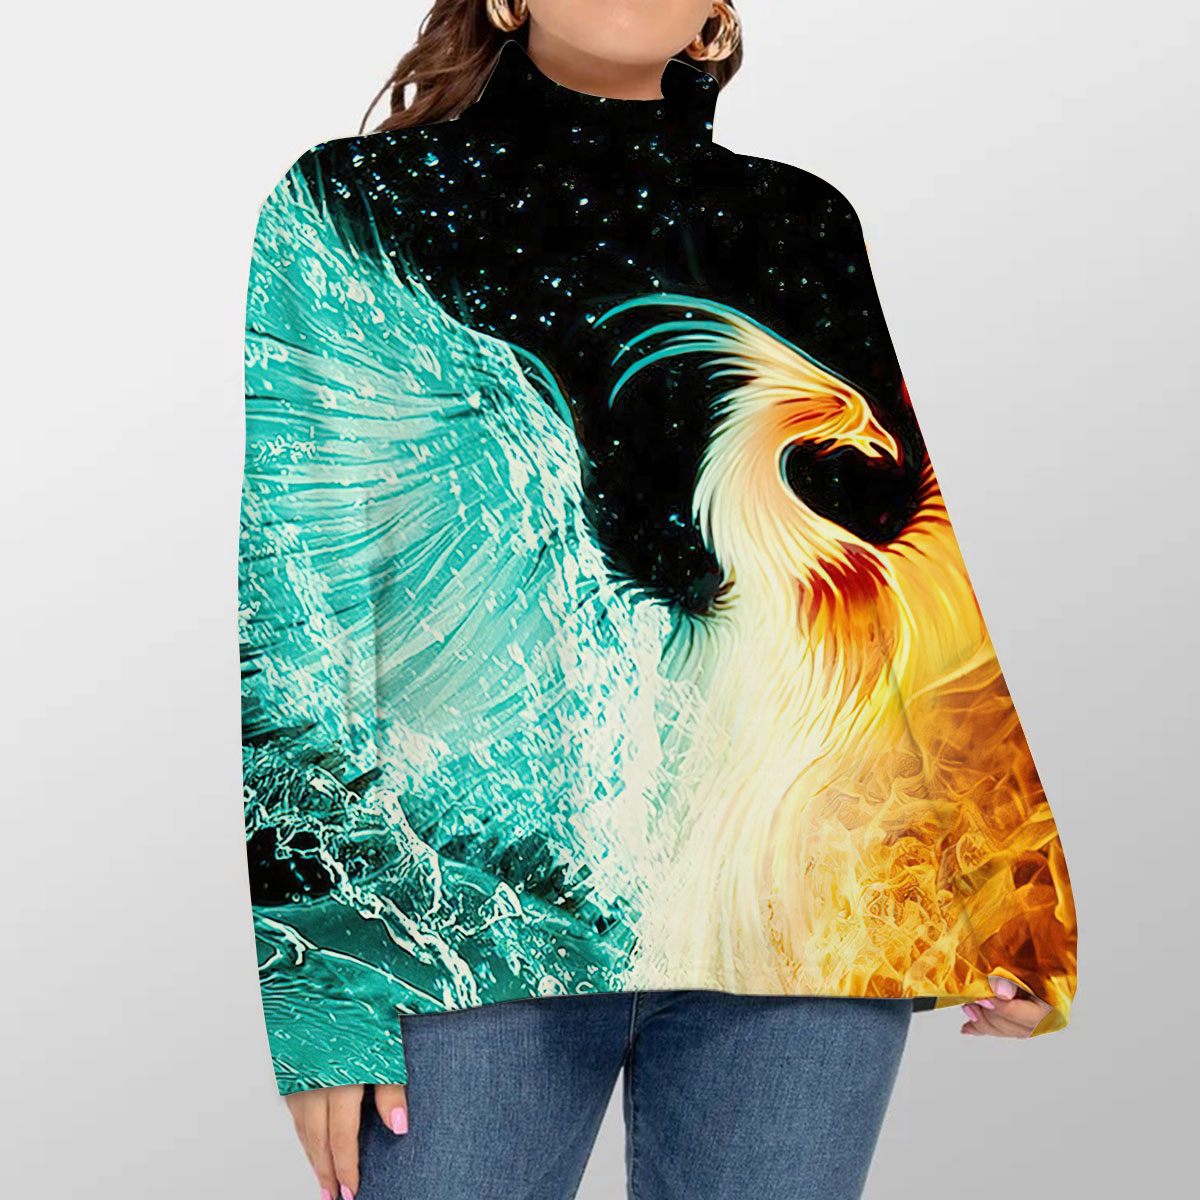 Fire _ Water Phoenix Turtleneck Sweater_1_2.1